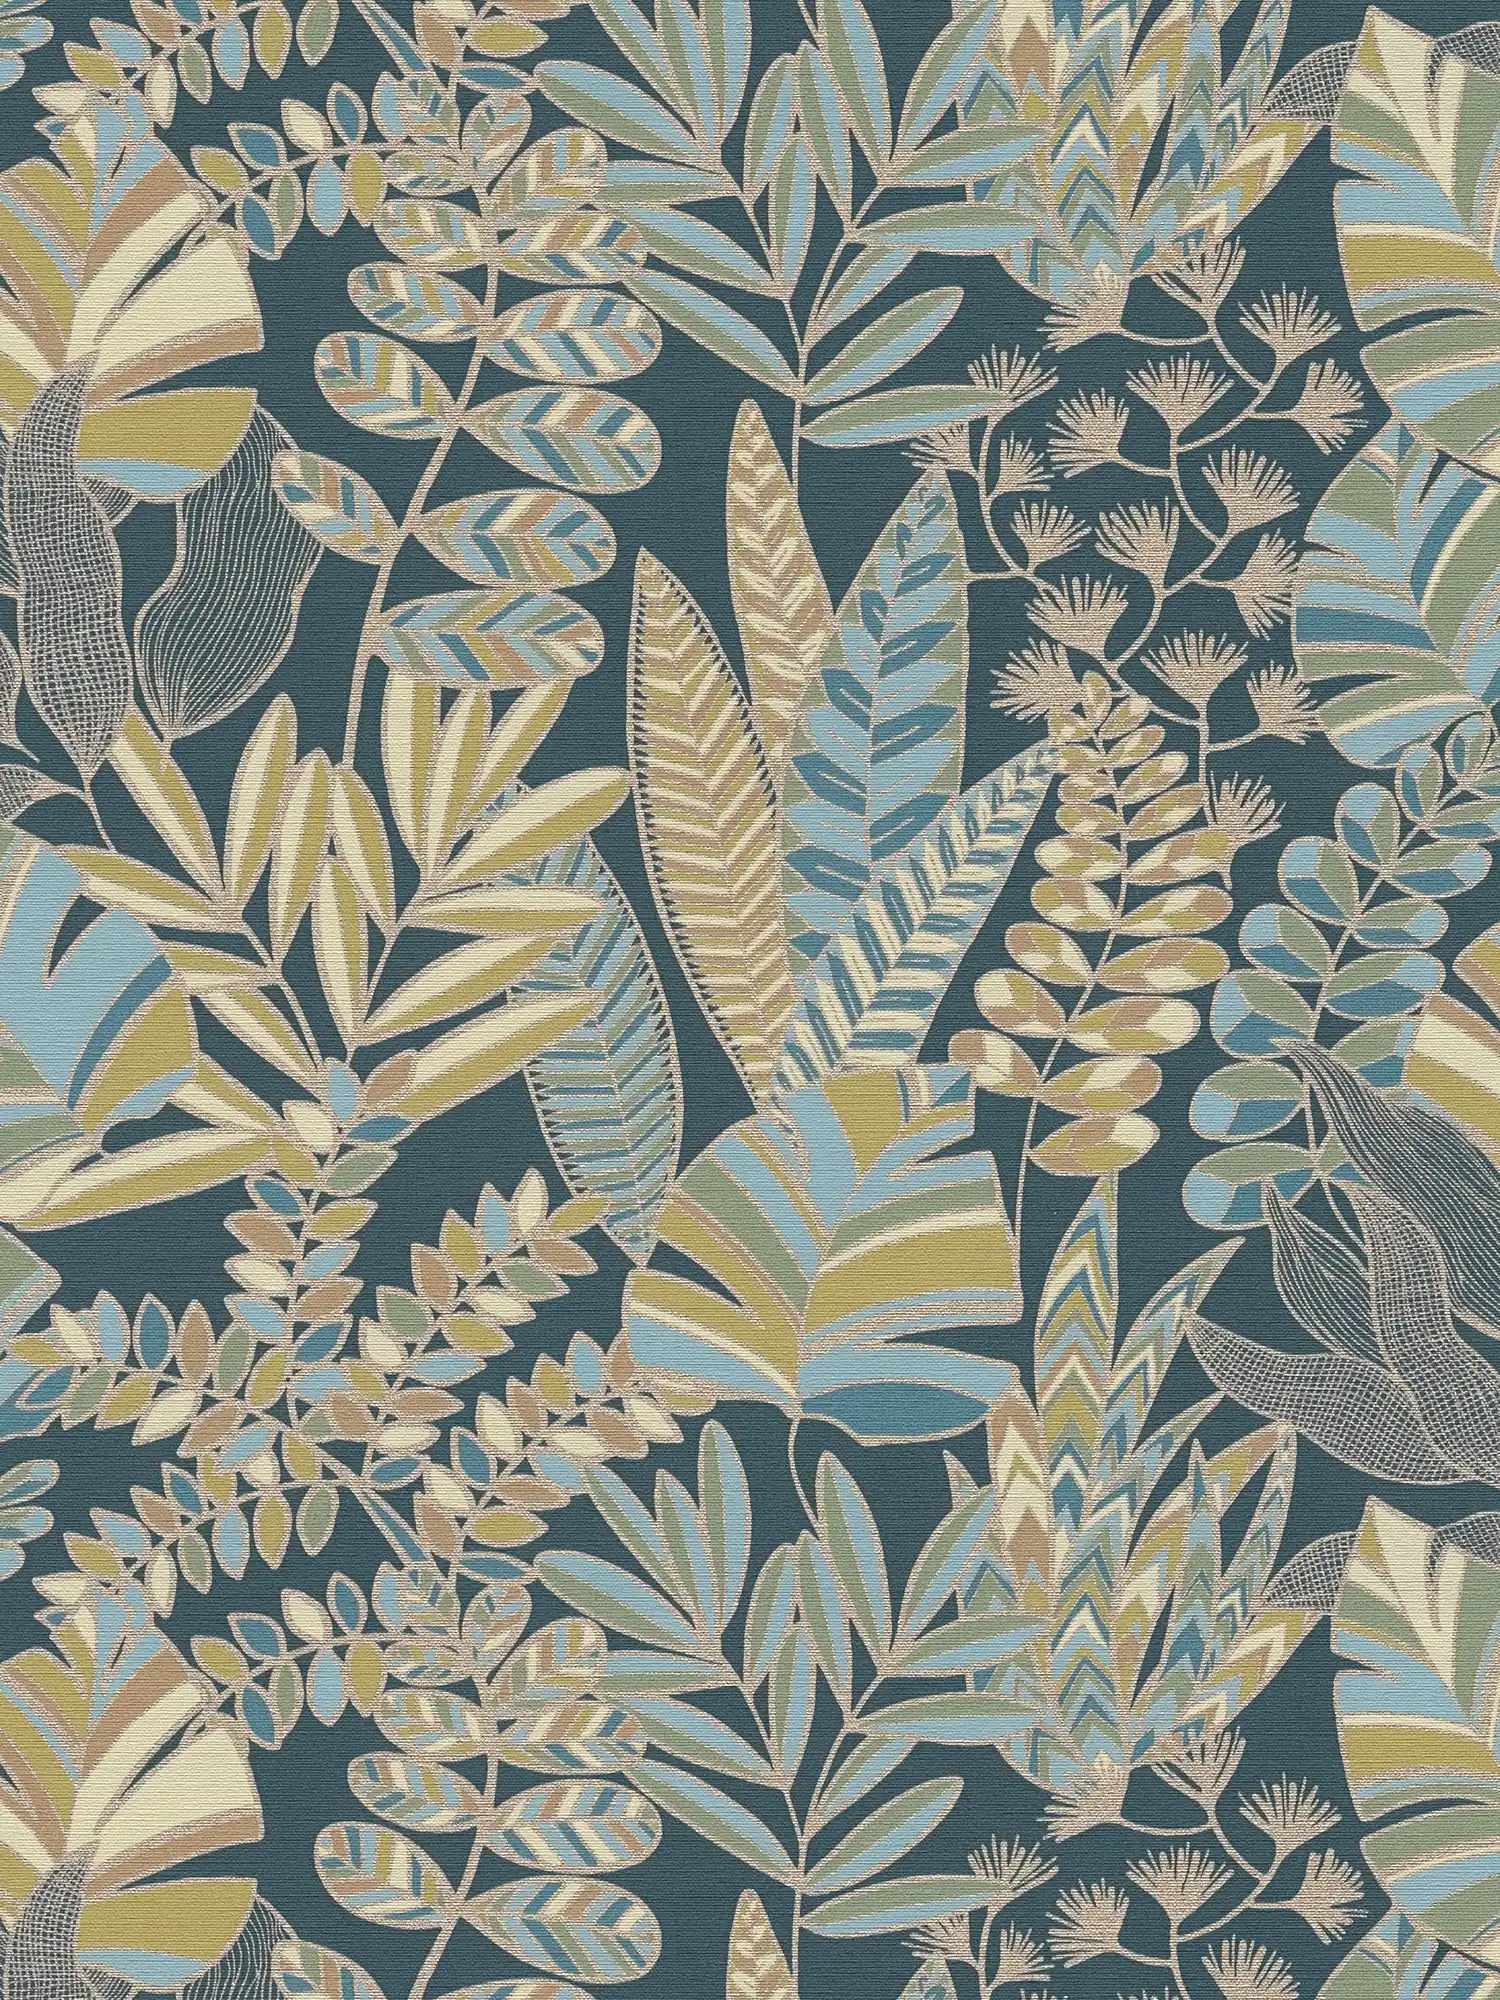 Vliestapete im Dschungelstil mit Glanzeffekt – Blau, Gold, Grün
